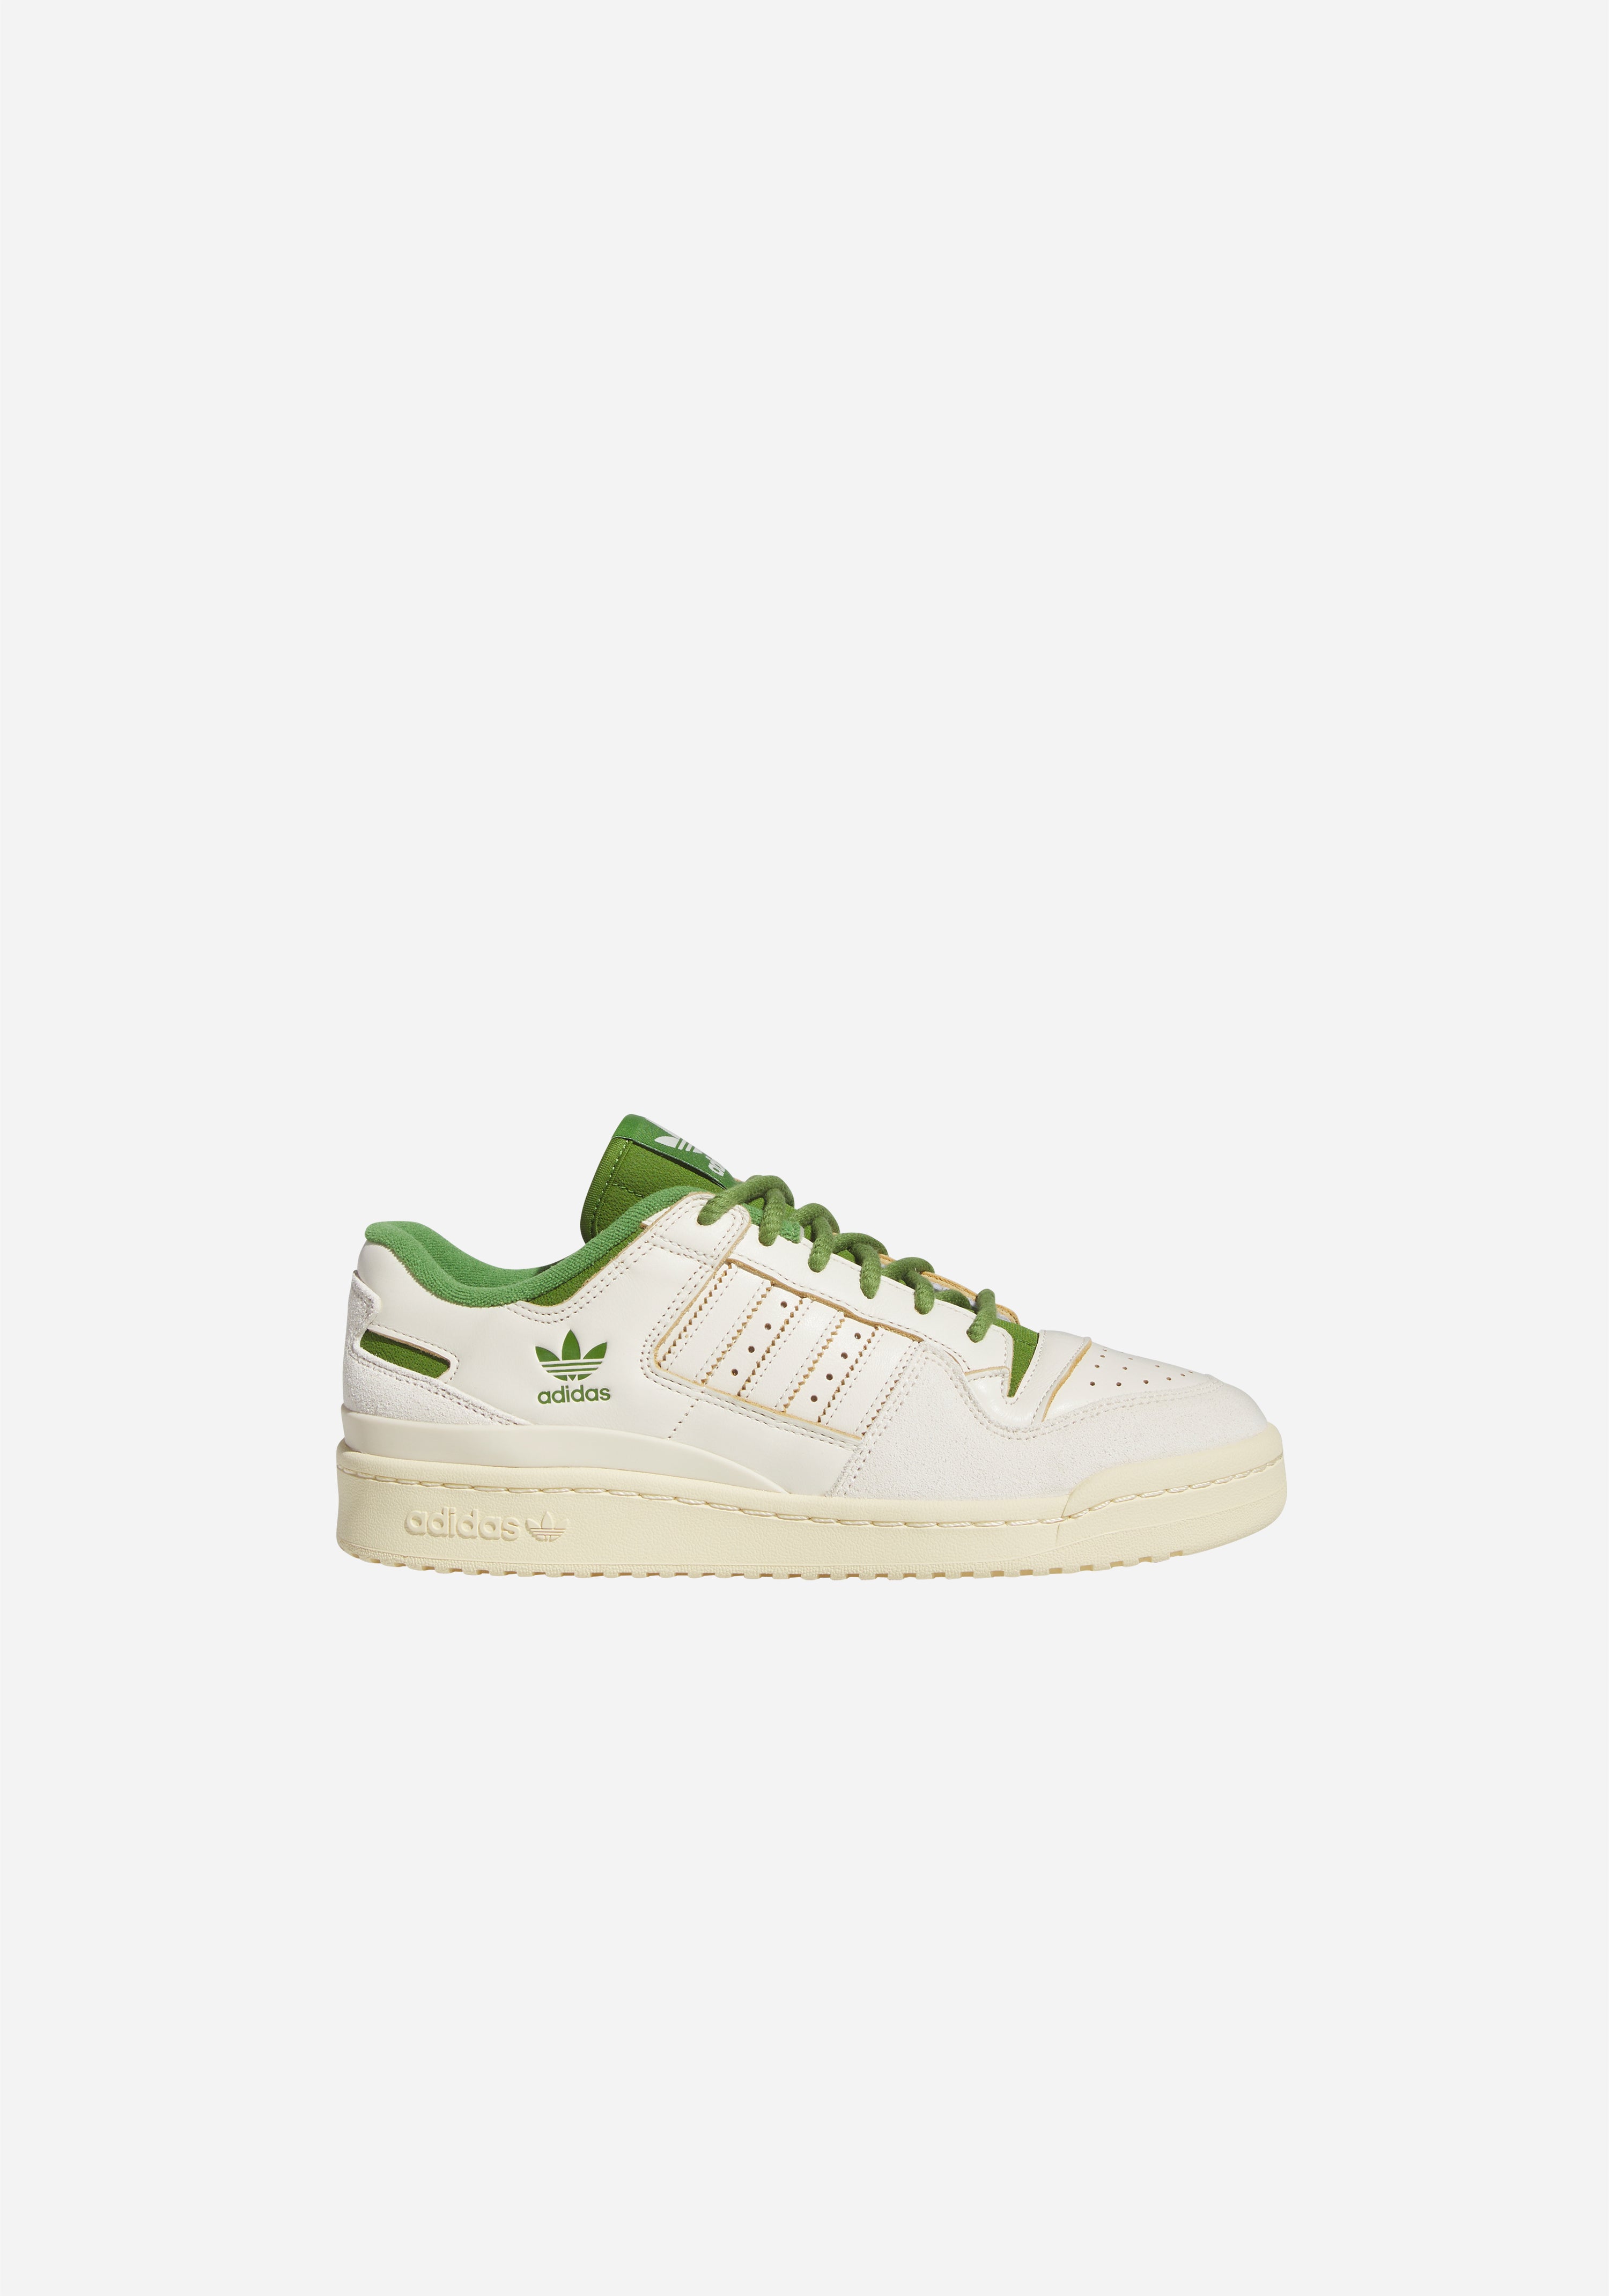 adidas Originals Women's GAZELLE BOLD IG3136 Green Footwear White Lucid  Pink | eBay